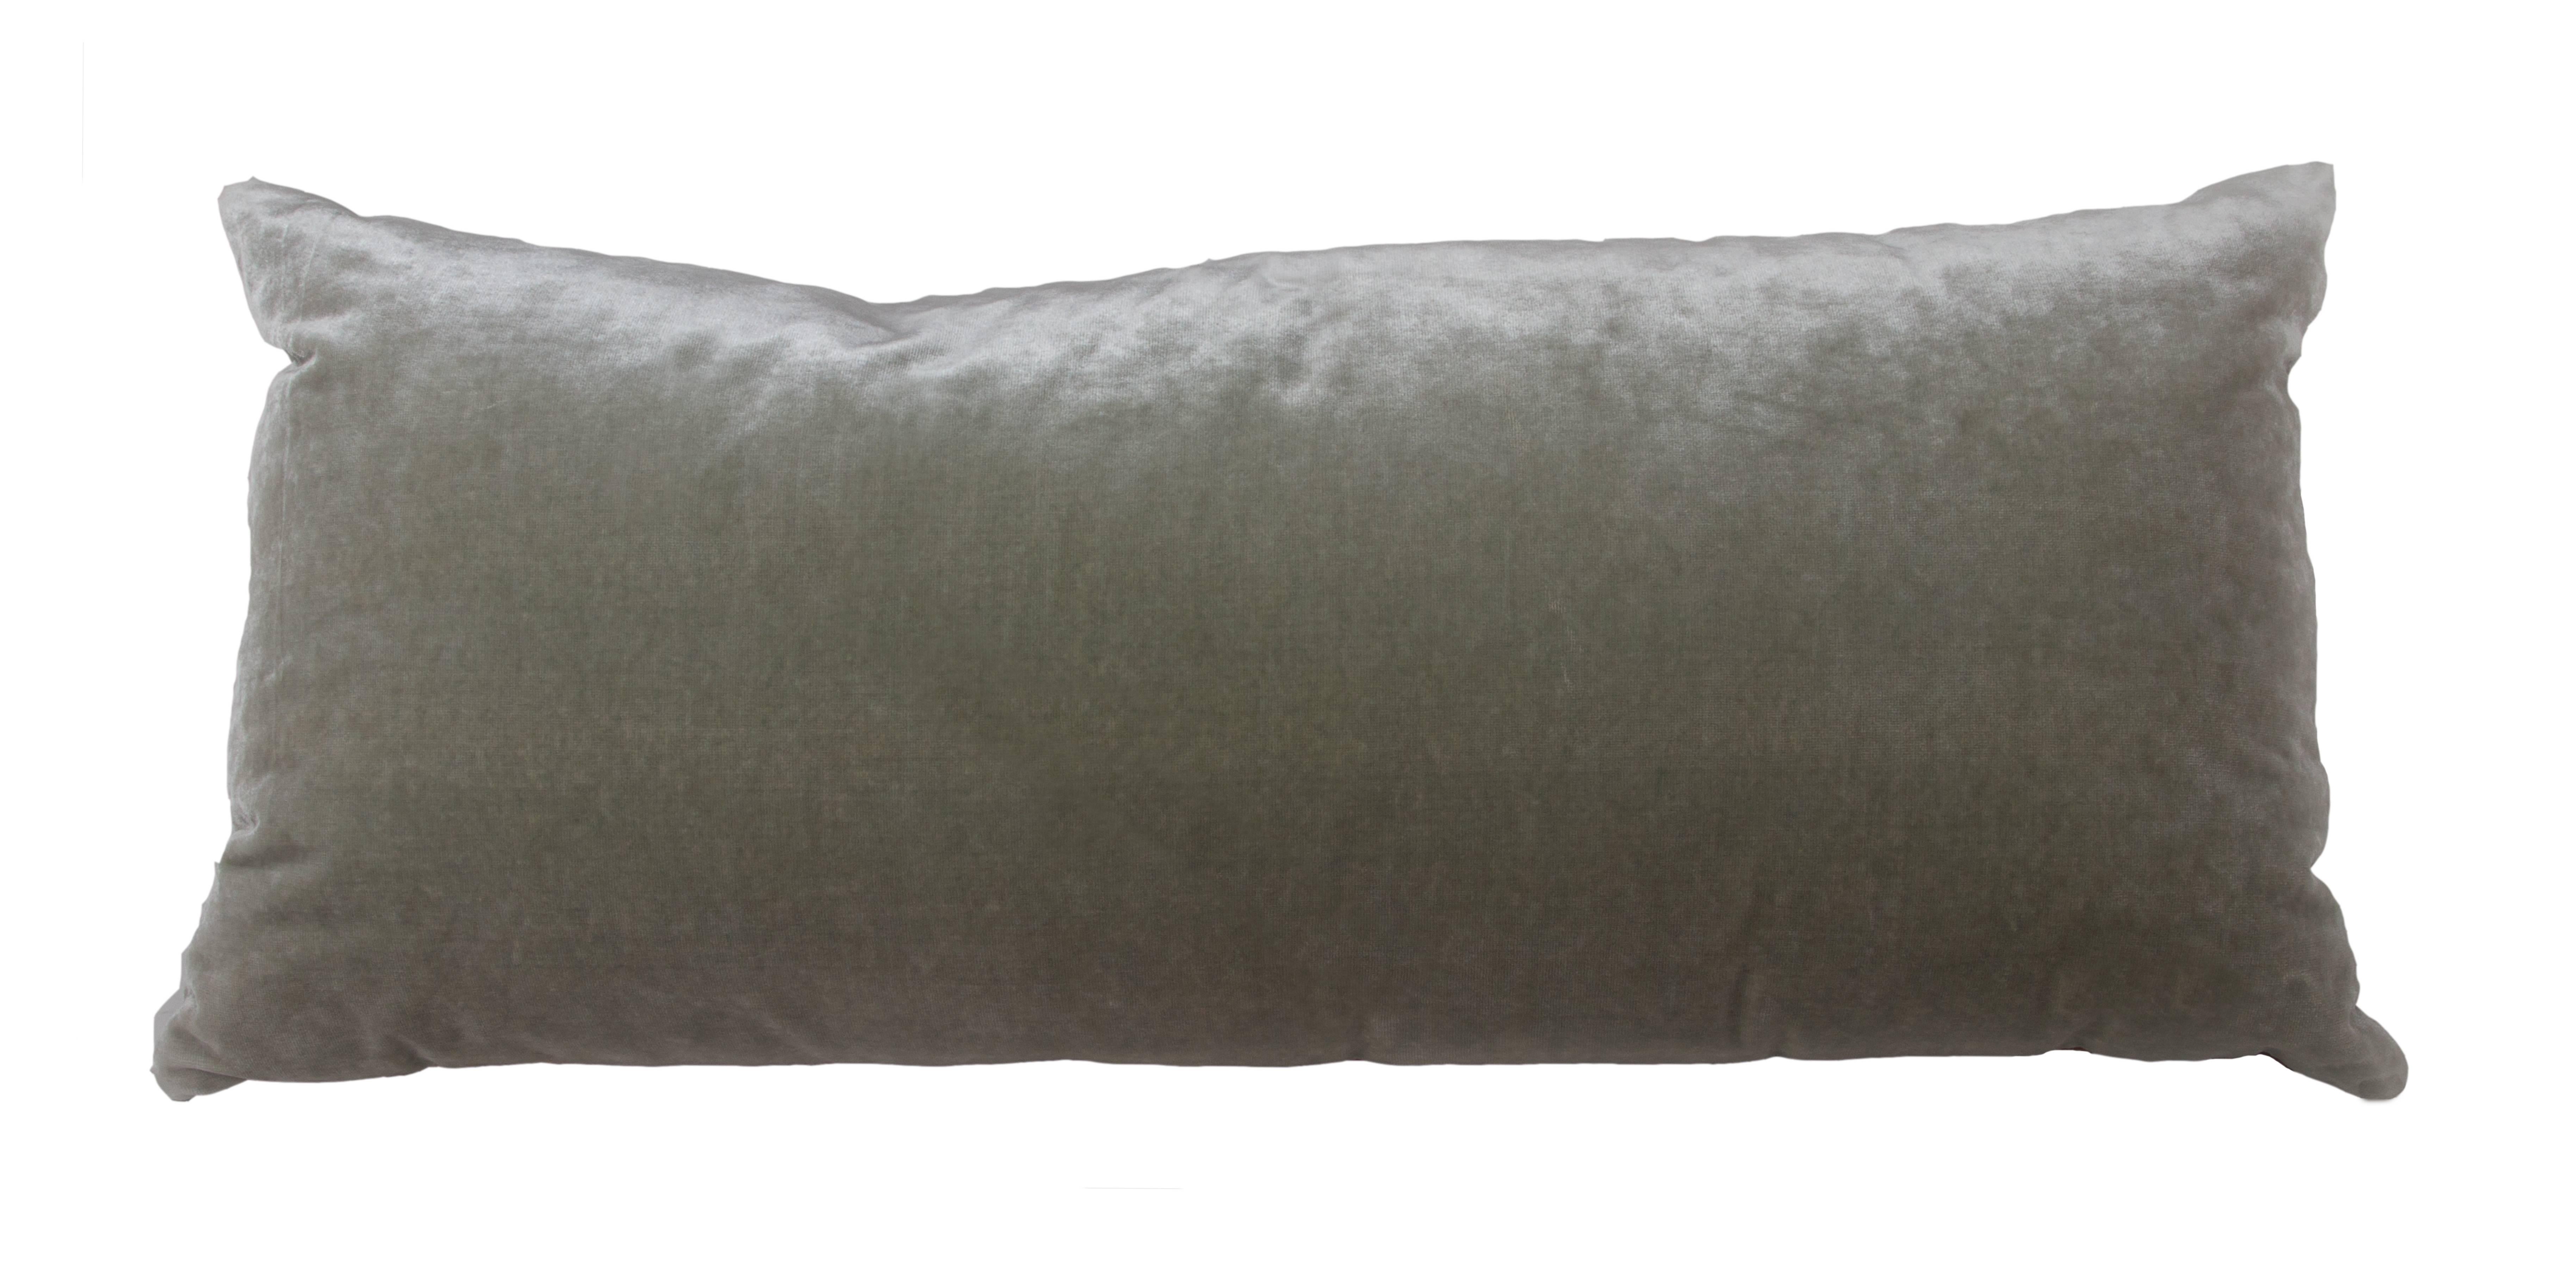 19th century silk velvet Ikat remnant pillow.